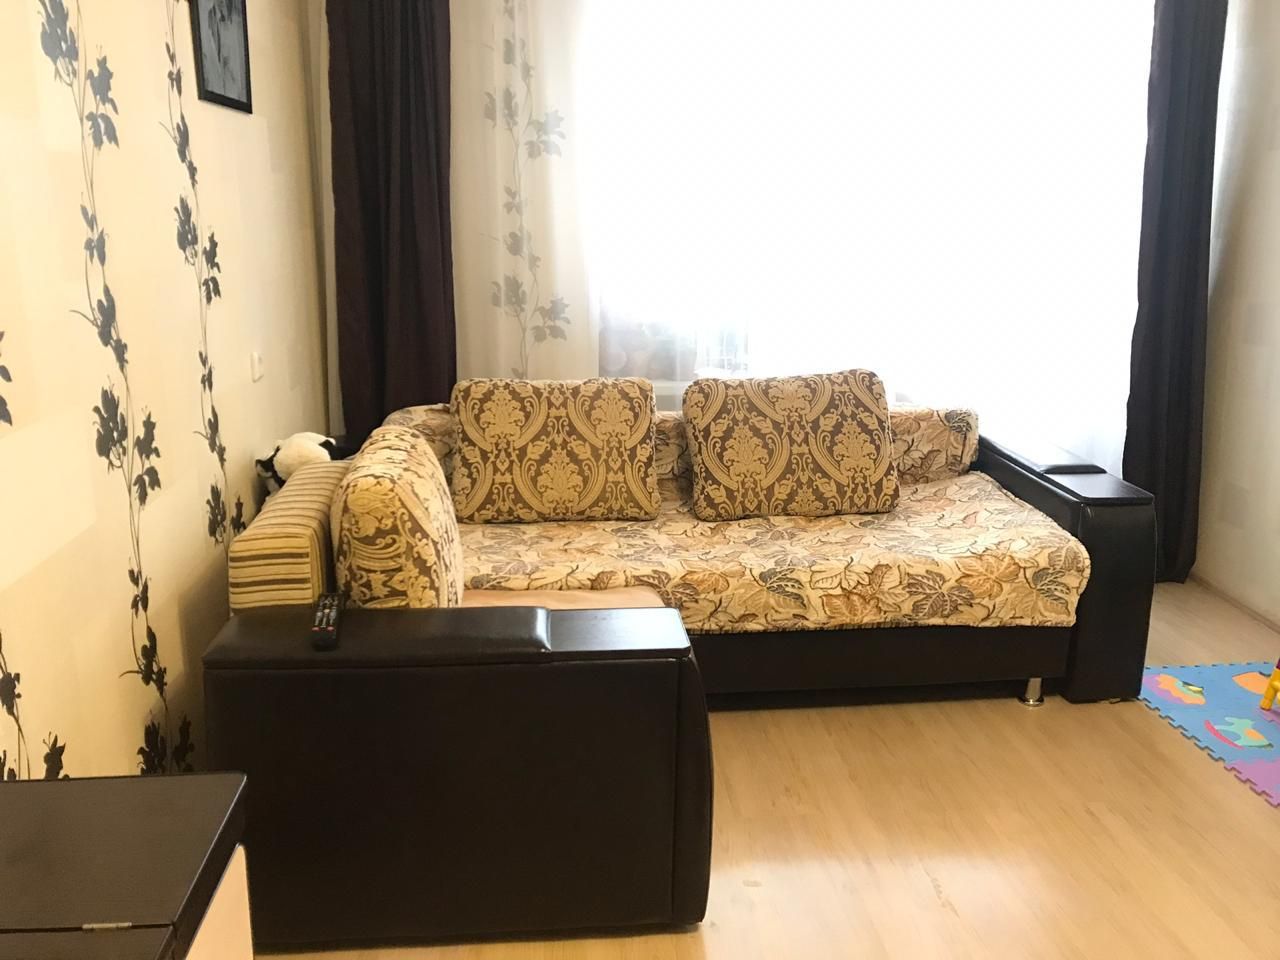 Продам 1 комнатную квартиру по улице Султангалиева д.31 - 3 ФОТО